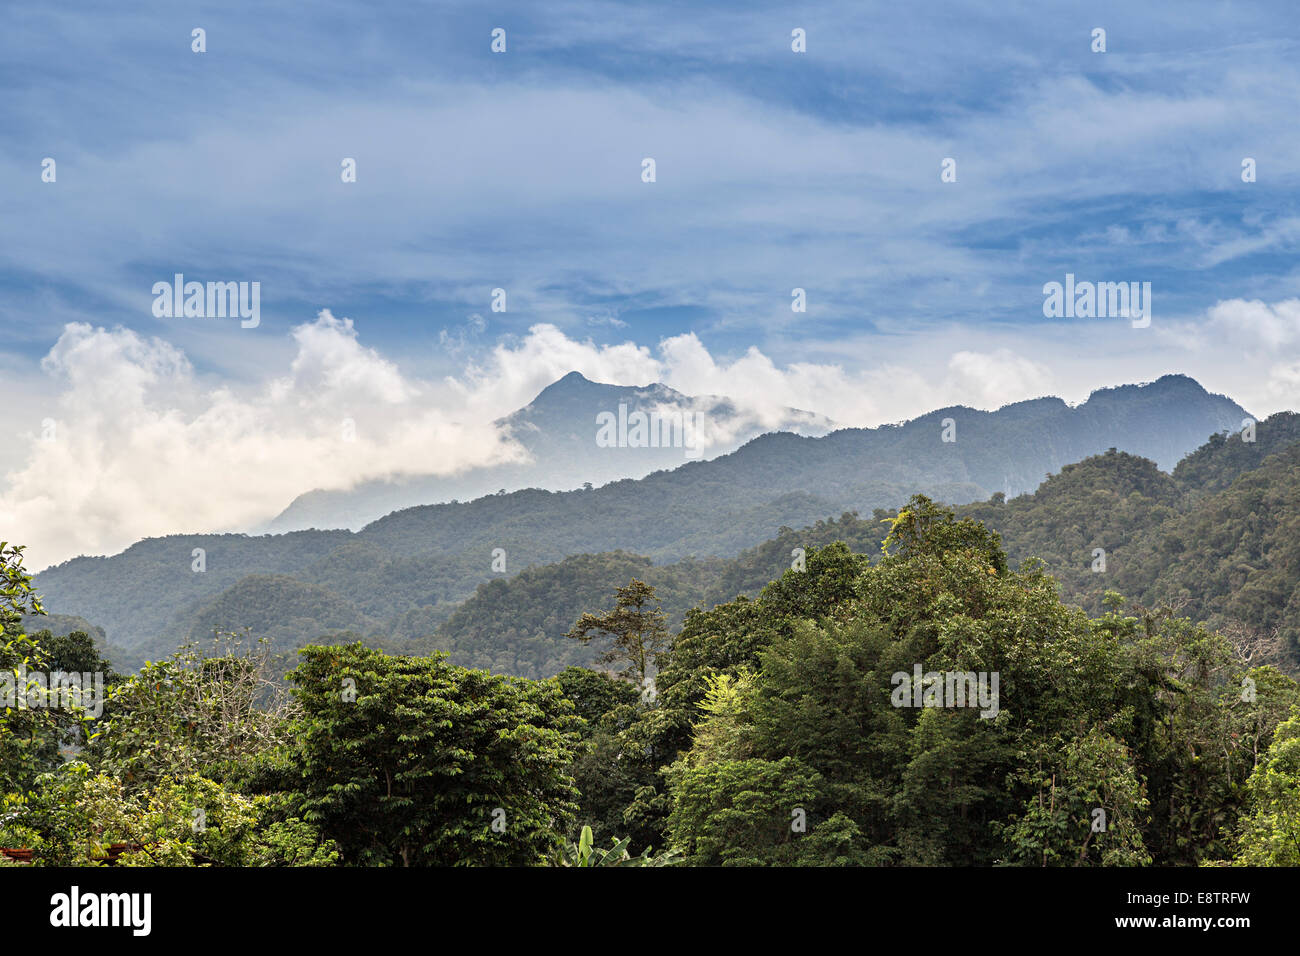 Les forêts tropicales et les montagnes, le parc national du Gunung Mulu, Sarawak, Malaisie Banque D'Images